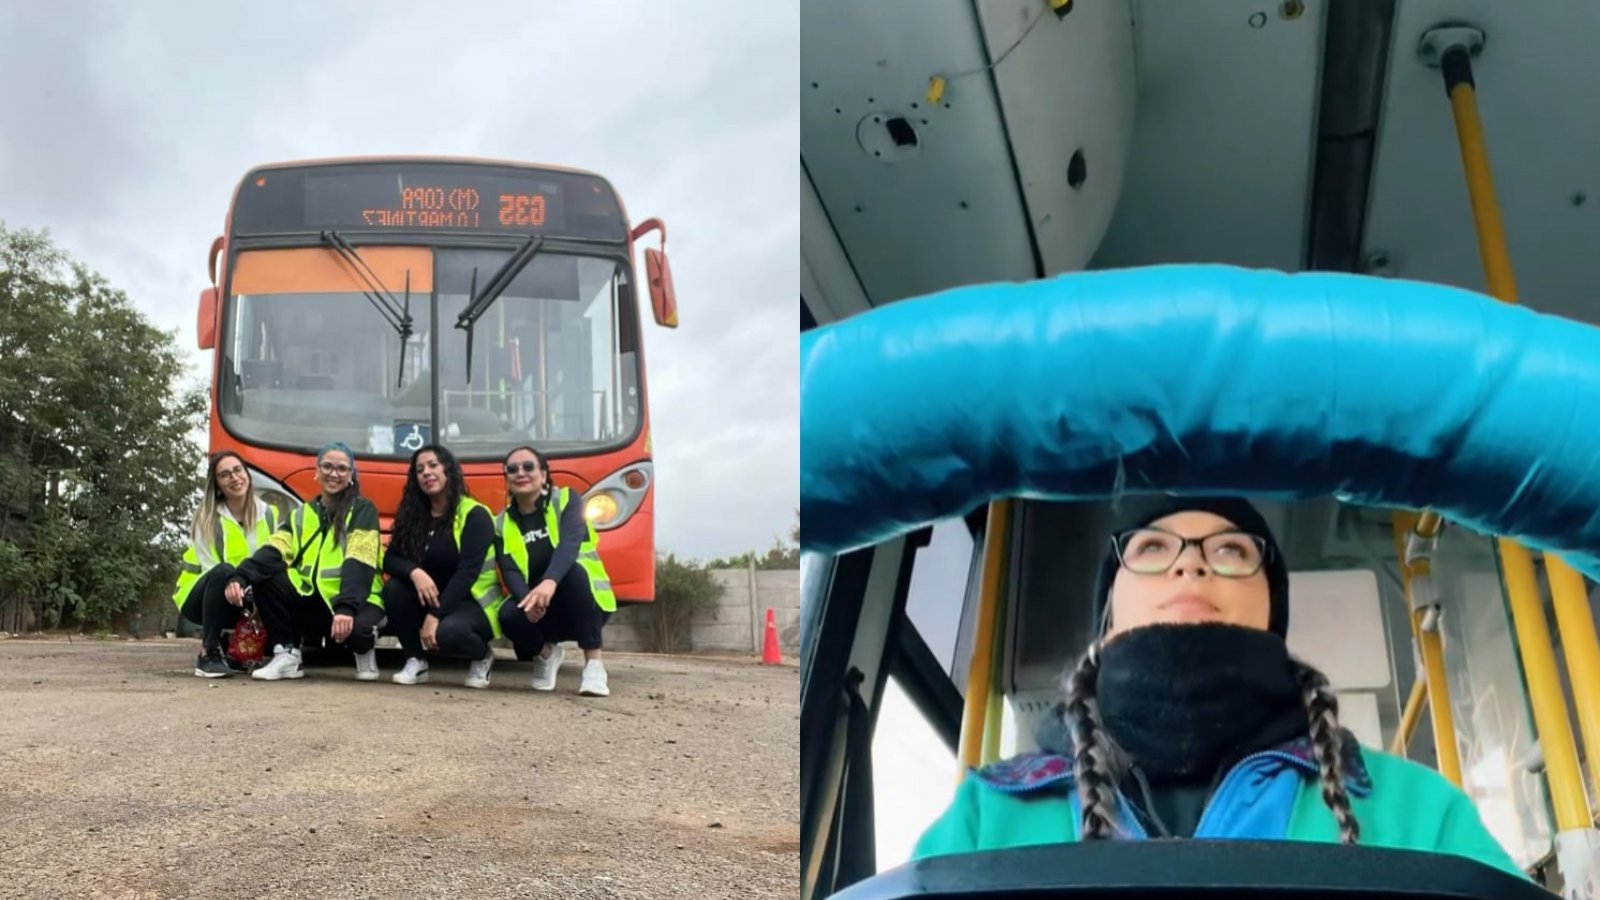 Matrona al volante: mujer reveló porque dejó su carrera para trabajar en autobuses